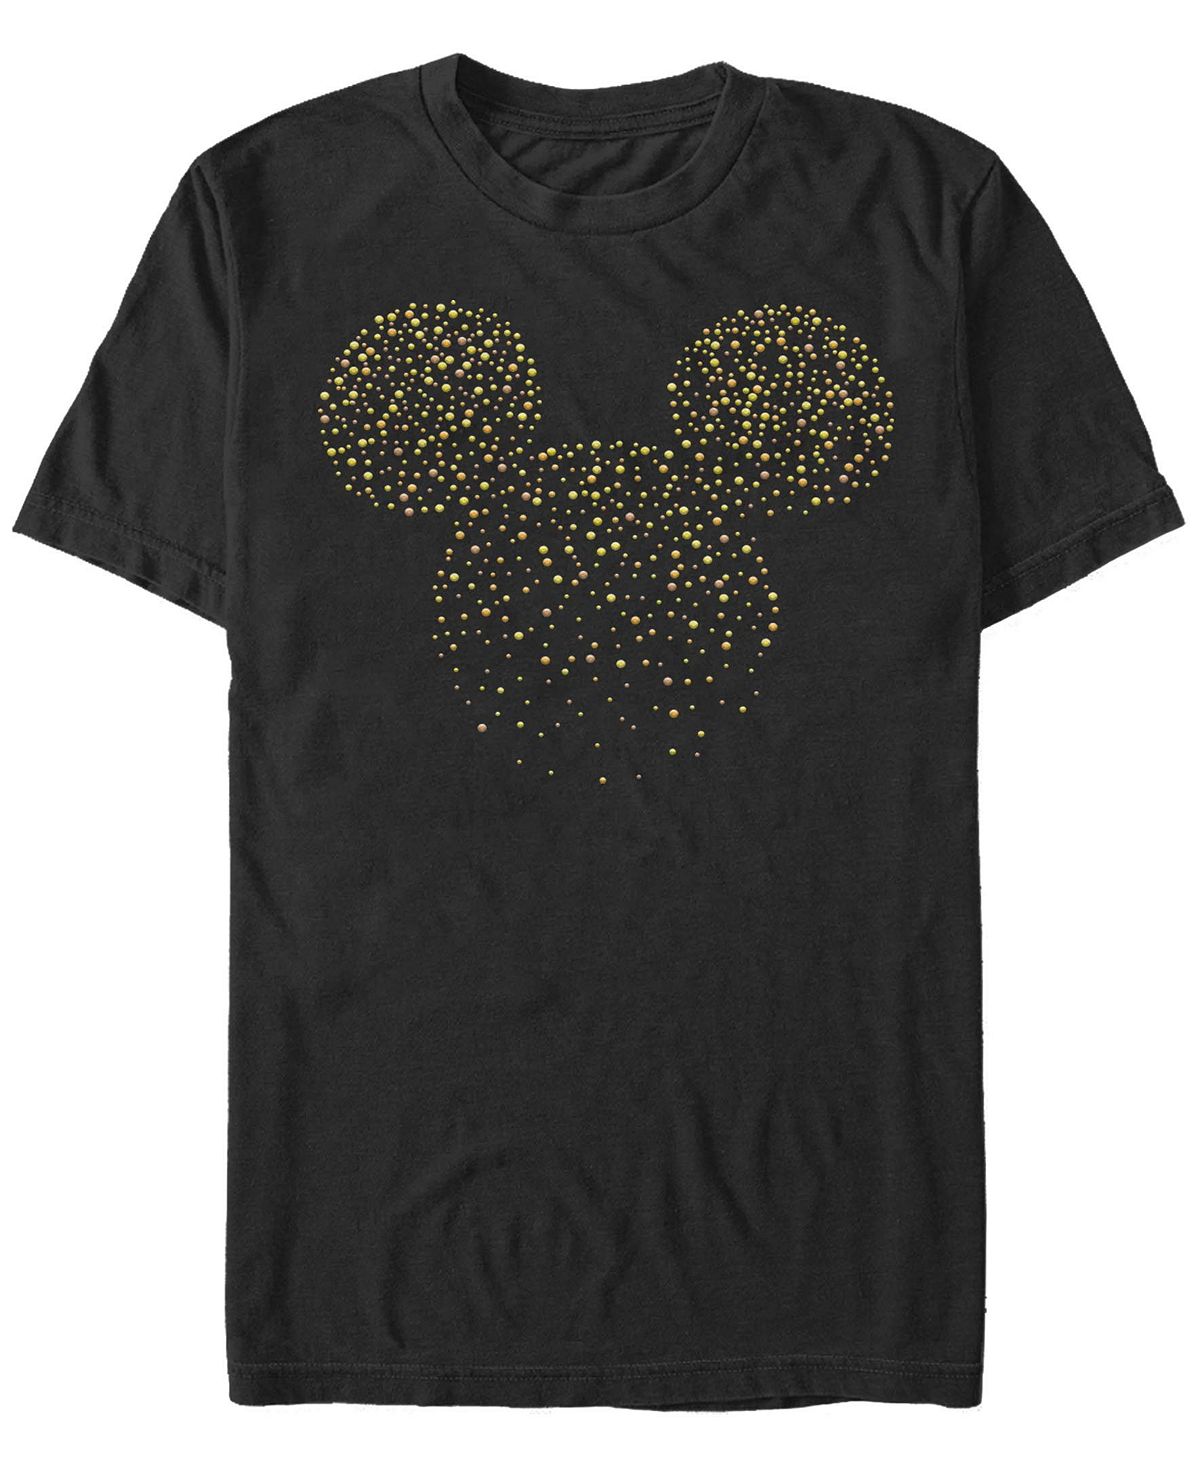 Мужская футболка Hotfix Mickey с короткими рукавами и круглым вырезом Fifth Sun мужская футболка с длинными рукавами mickey classic vampire mickey fifth sun